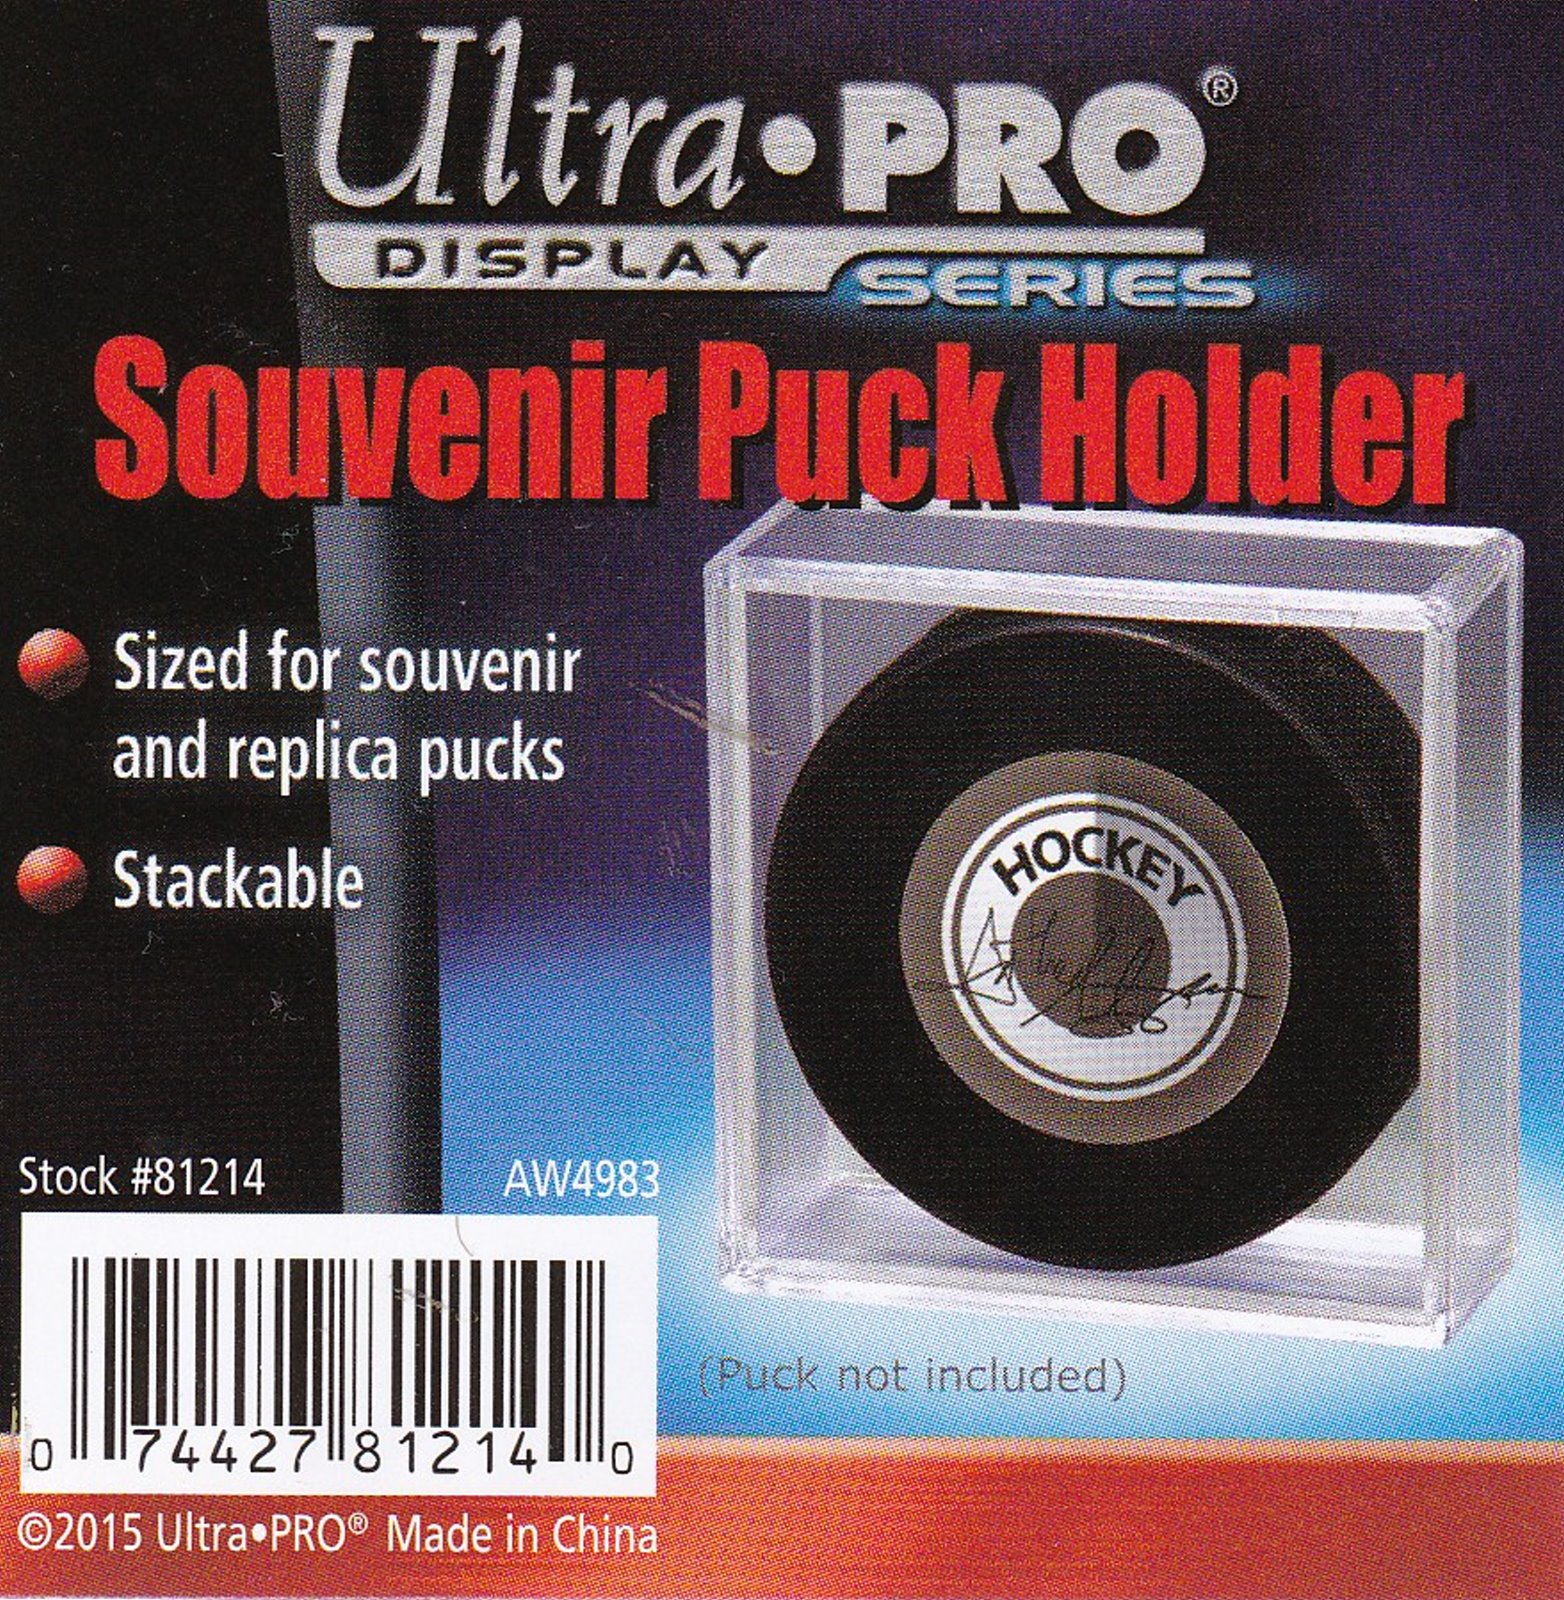 Ultra Pro Souvenir Puck Holder